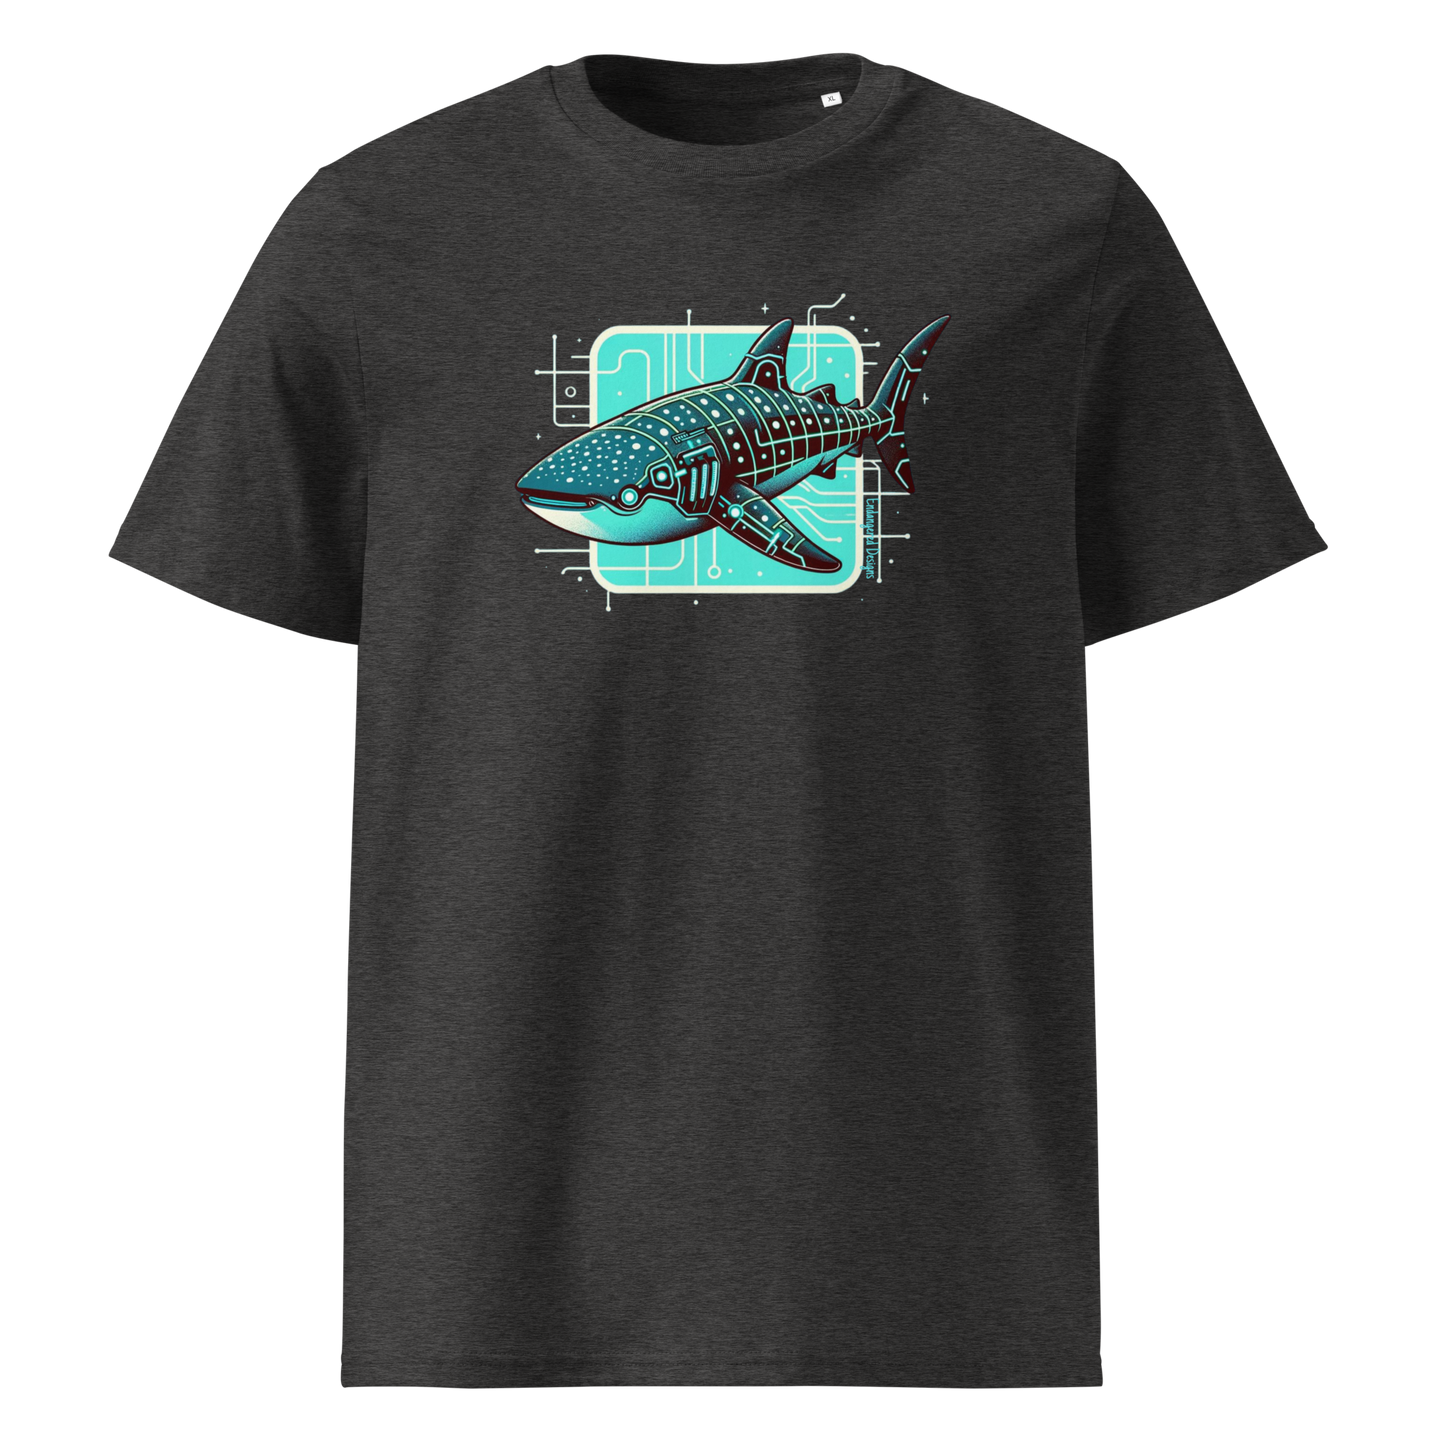 Cyberpunk'd Whale Shark - Organic T-Shirt